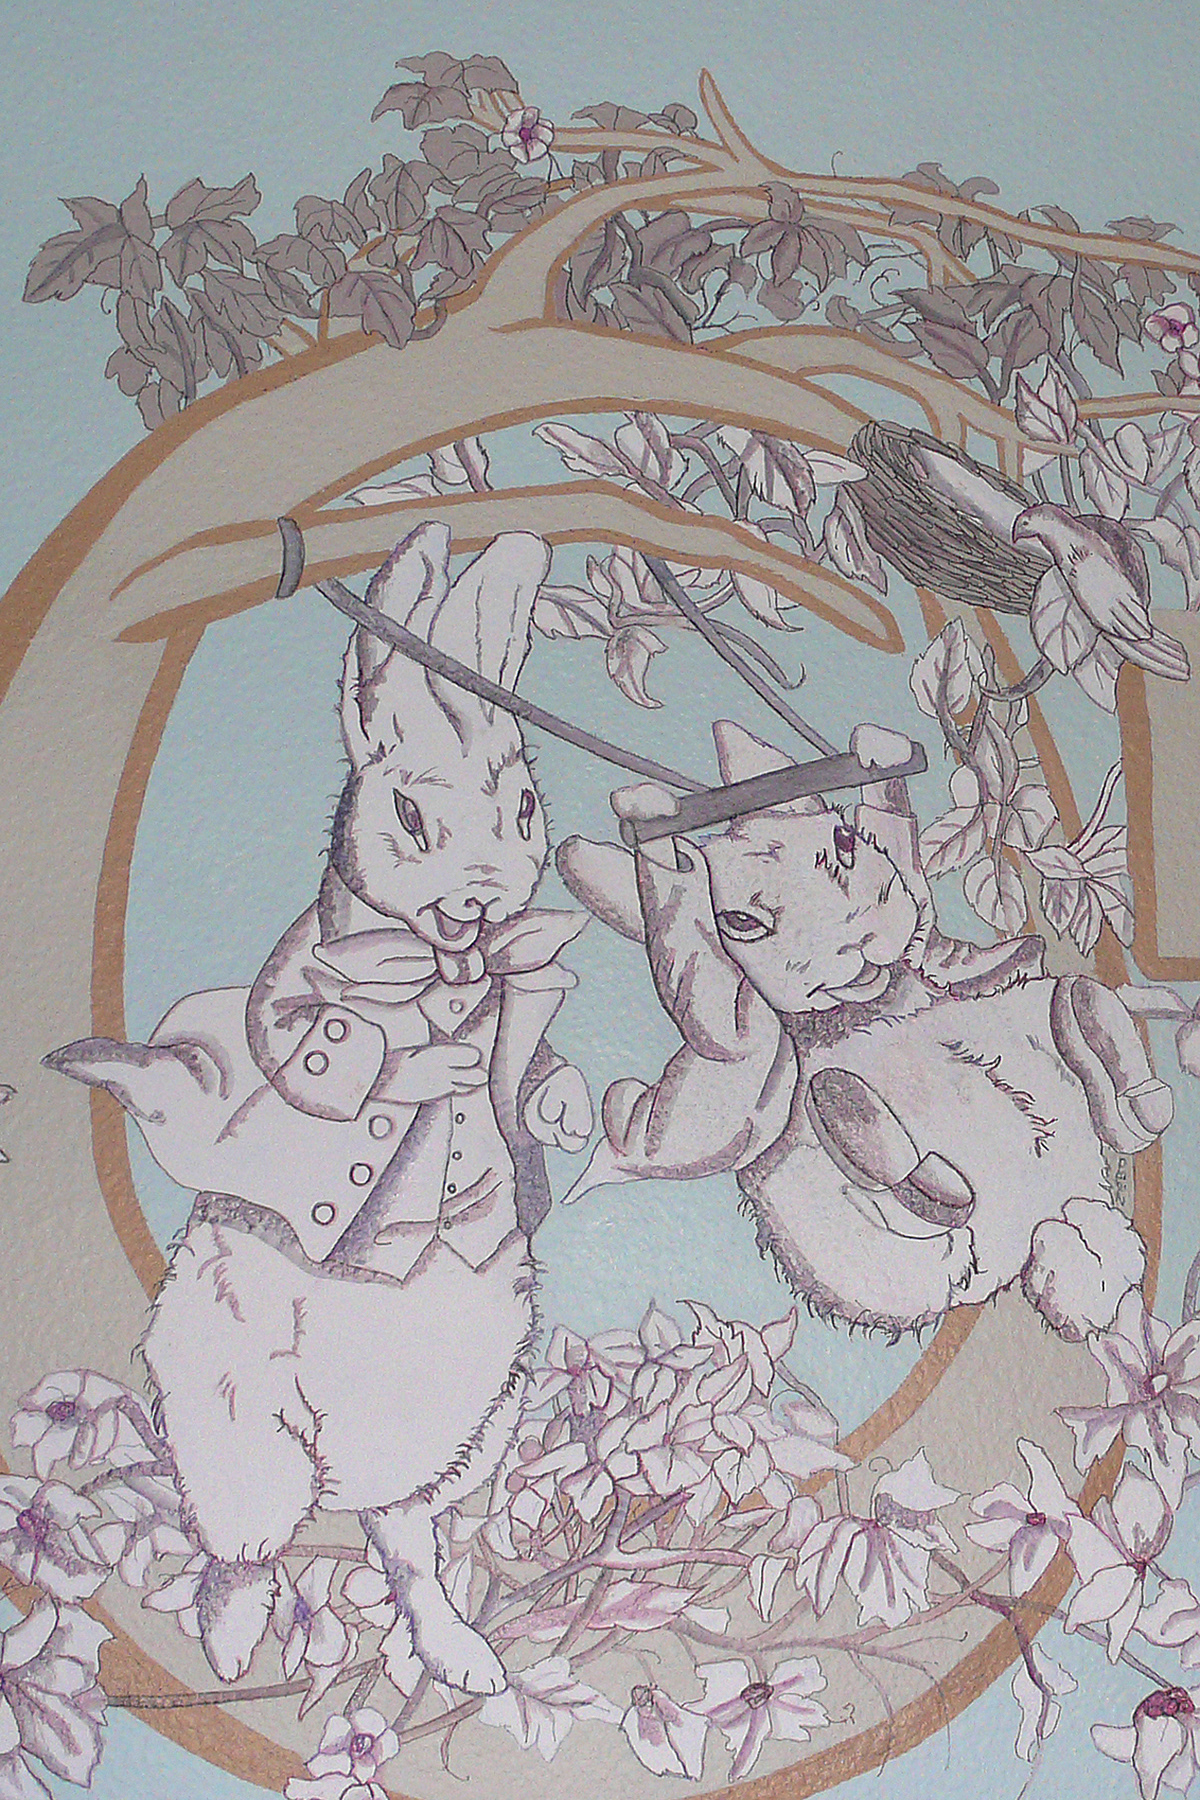 Murals children's murals Peter Rabbit daisy elephant playhouse noahs ark flower angel clouds ceiling car blimp trees lion